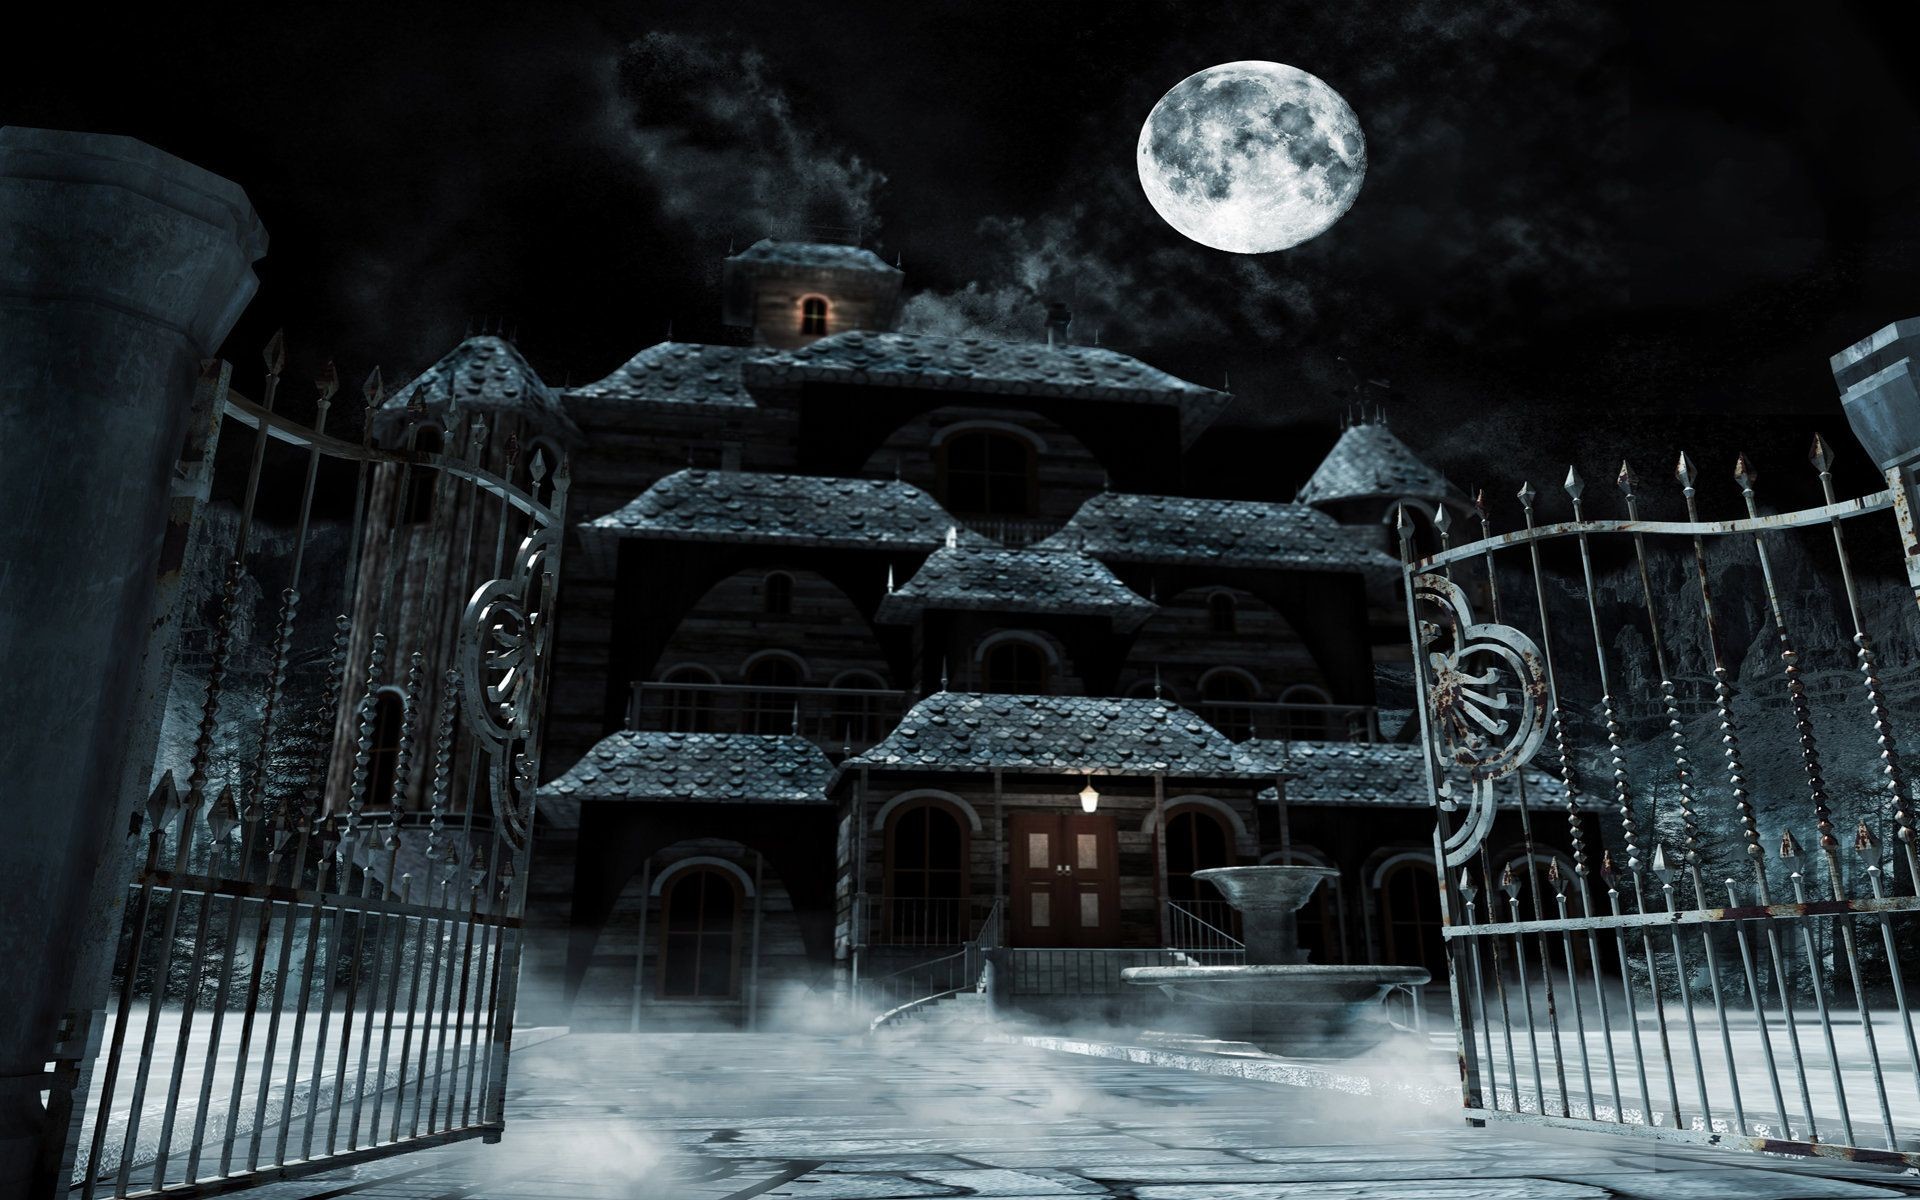 Дом с привидениями (Haunted House) Hindi